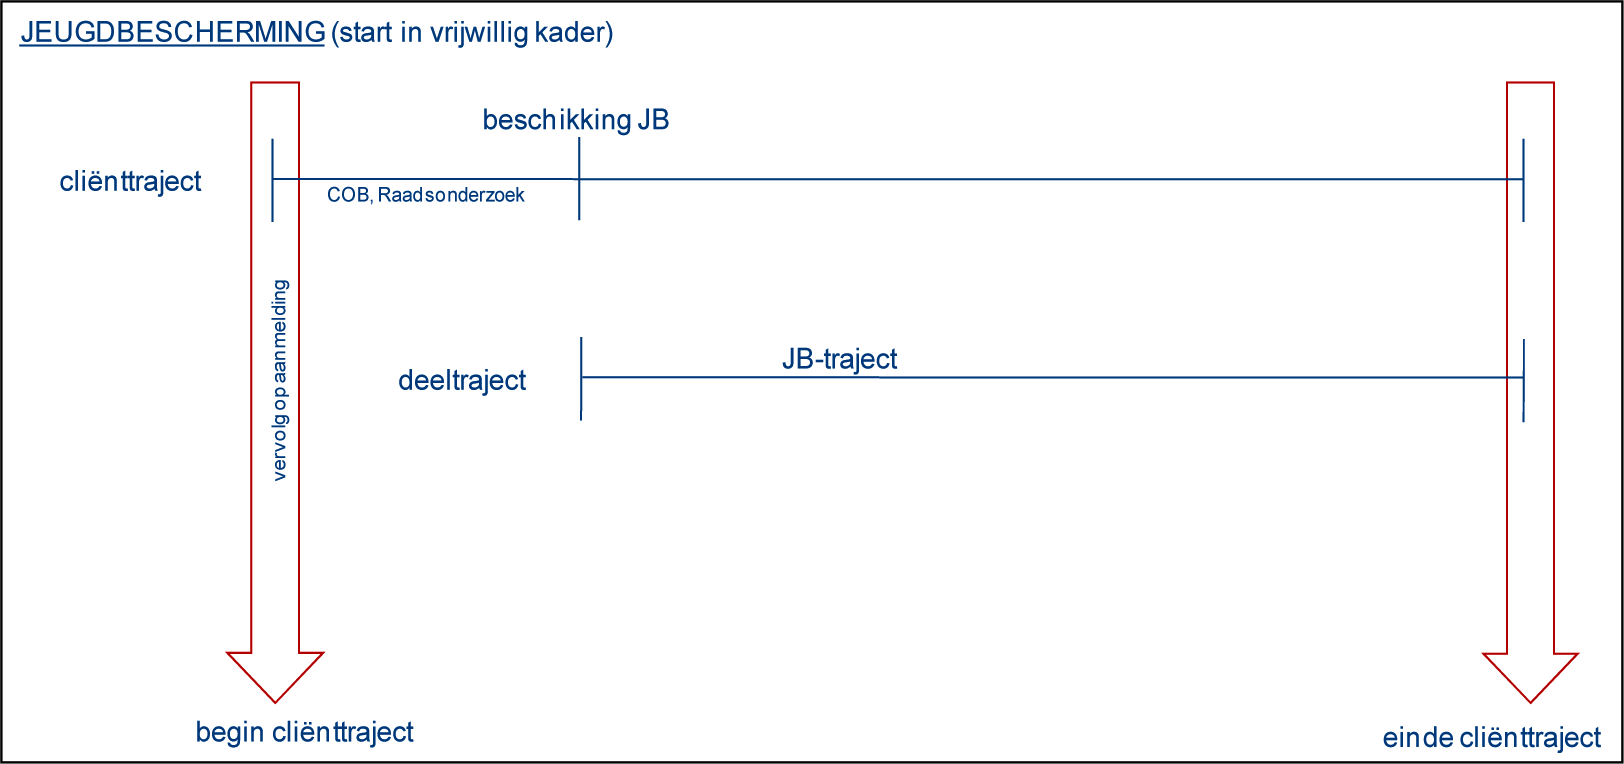 Figuur 2. Voorbeeld cliënttraject en jeugdbescherming (JB-traject) met start in het vrijwillige kader